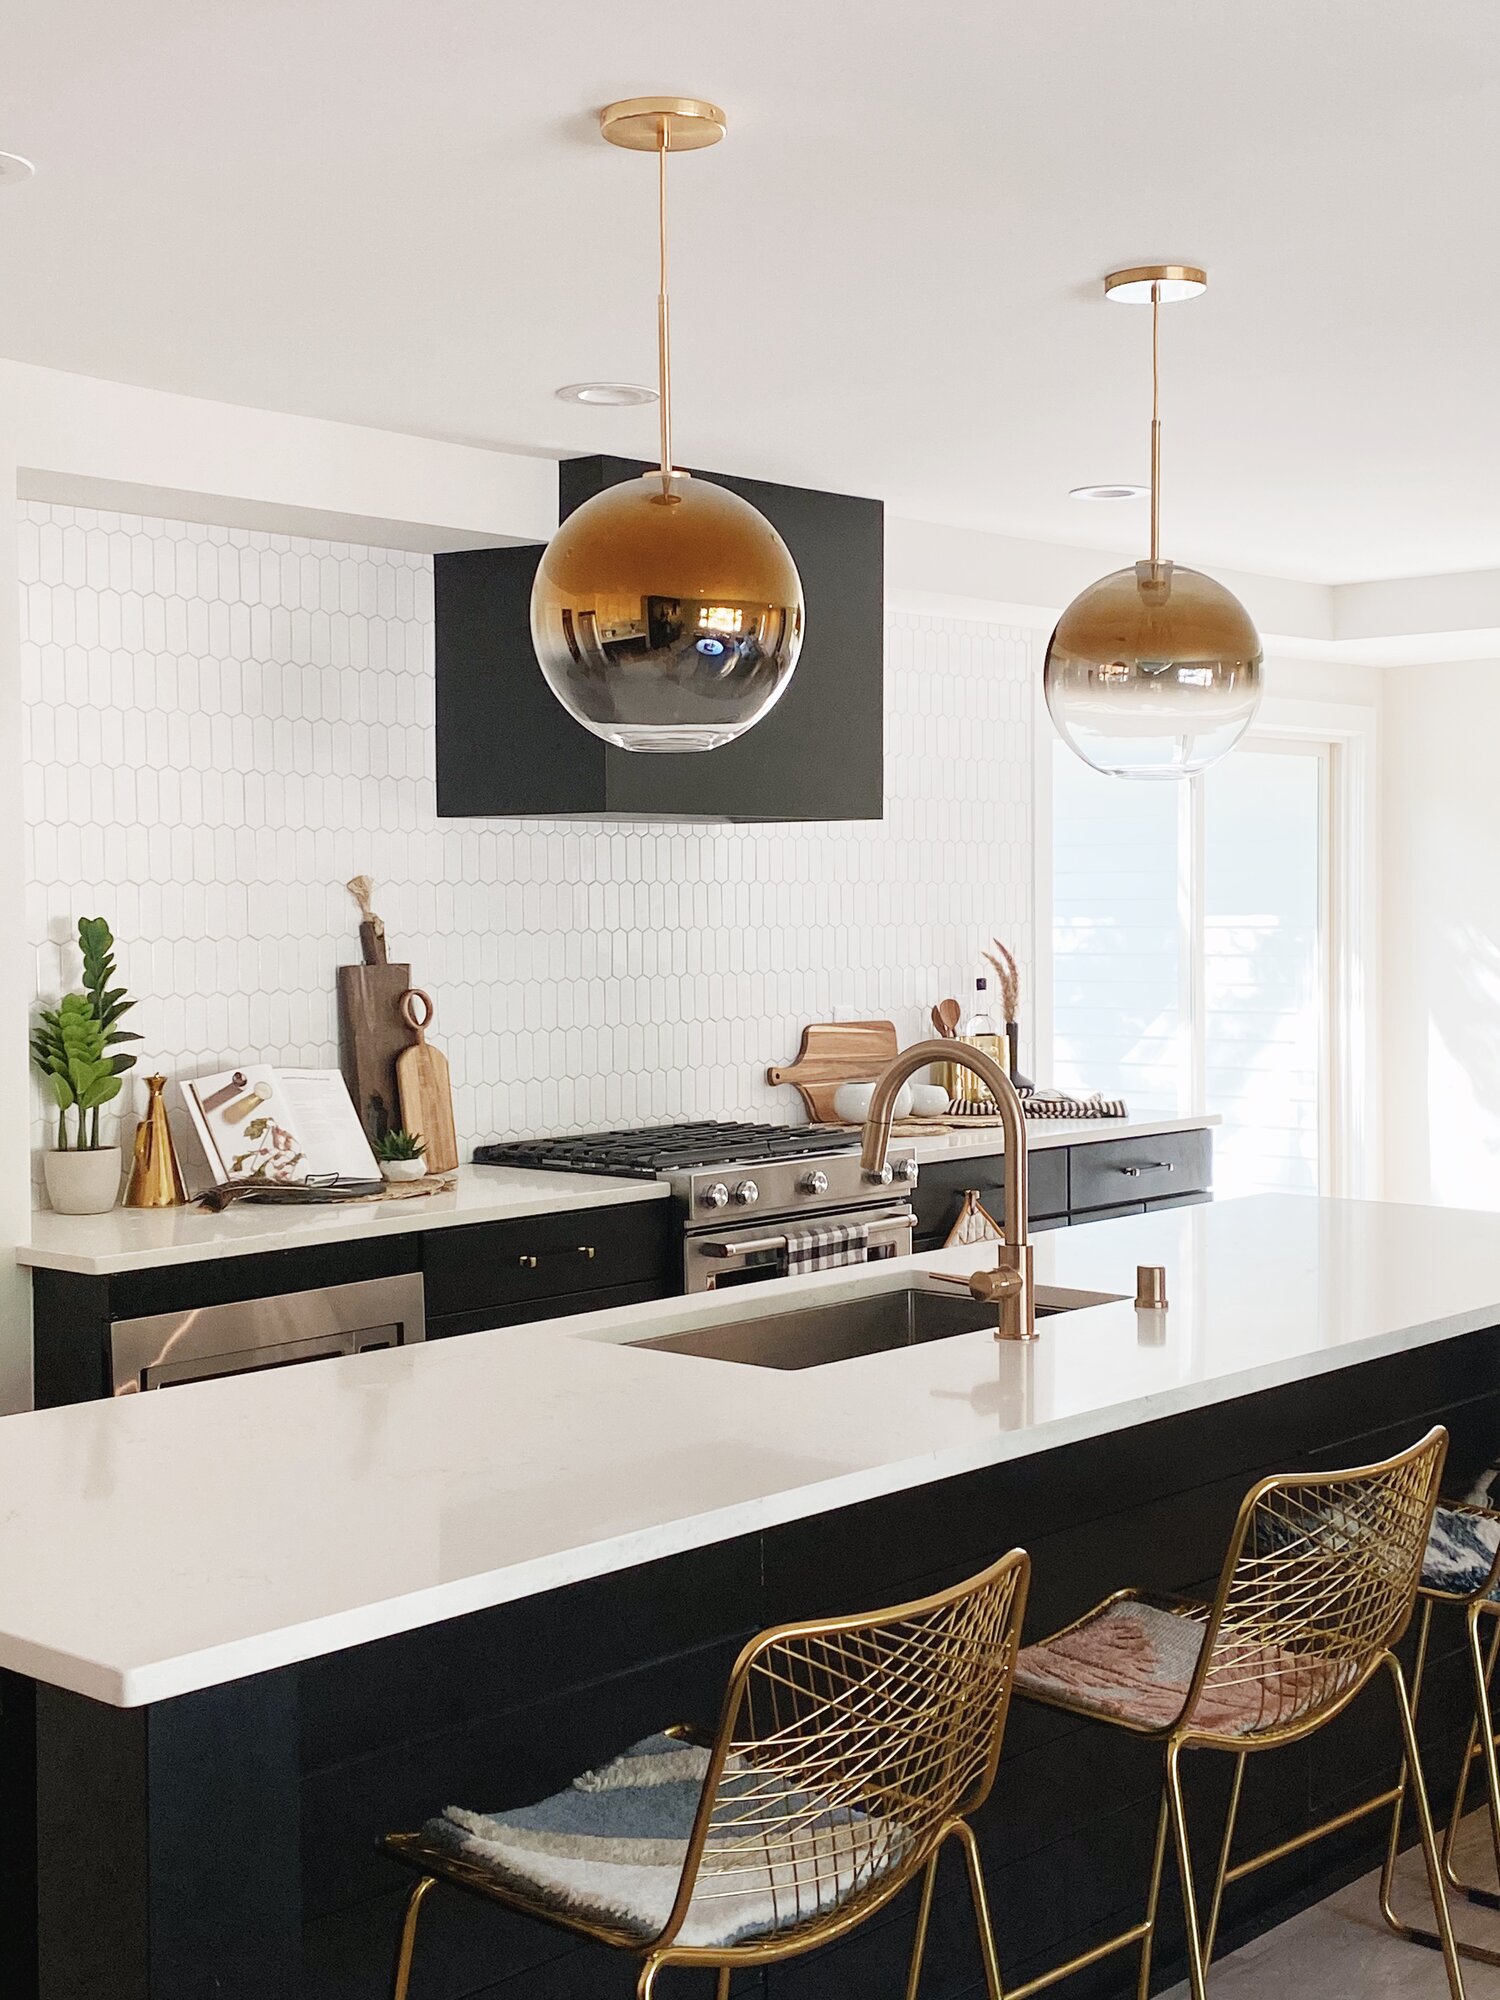 Modern kitchen featuring gold light pendants